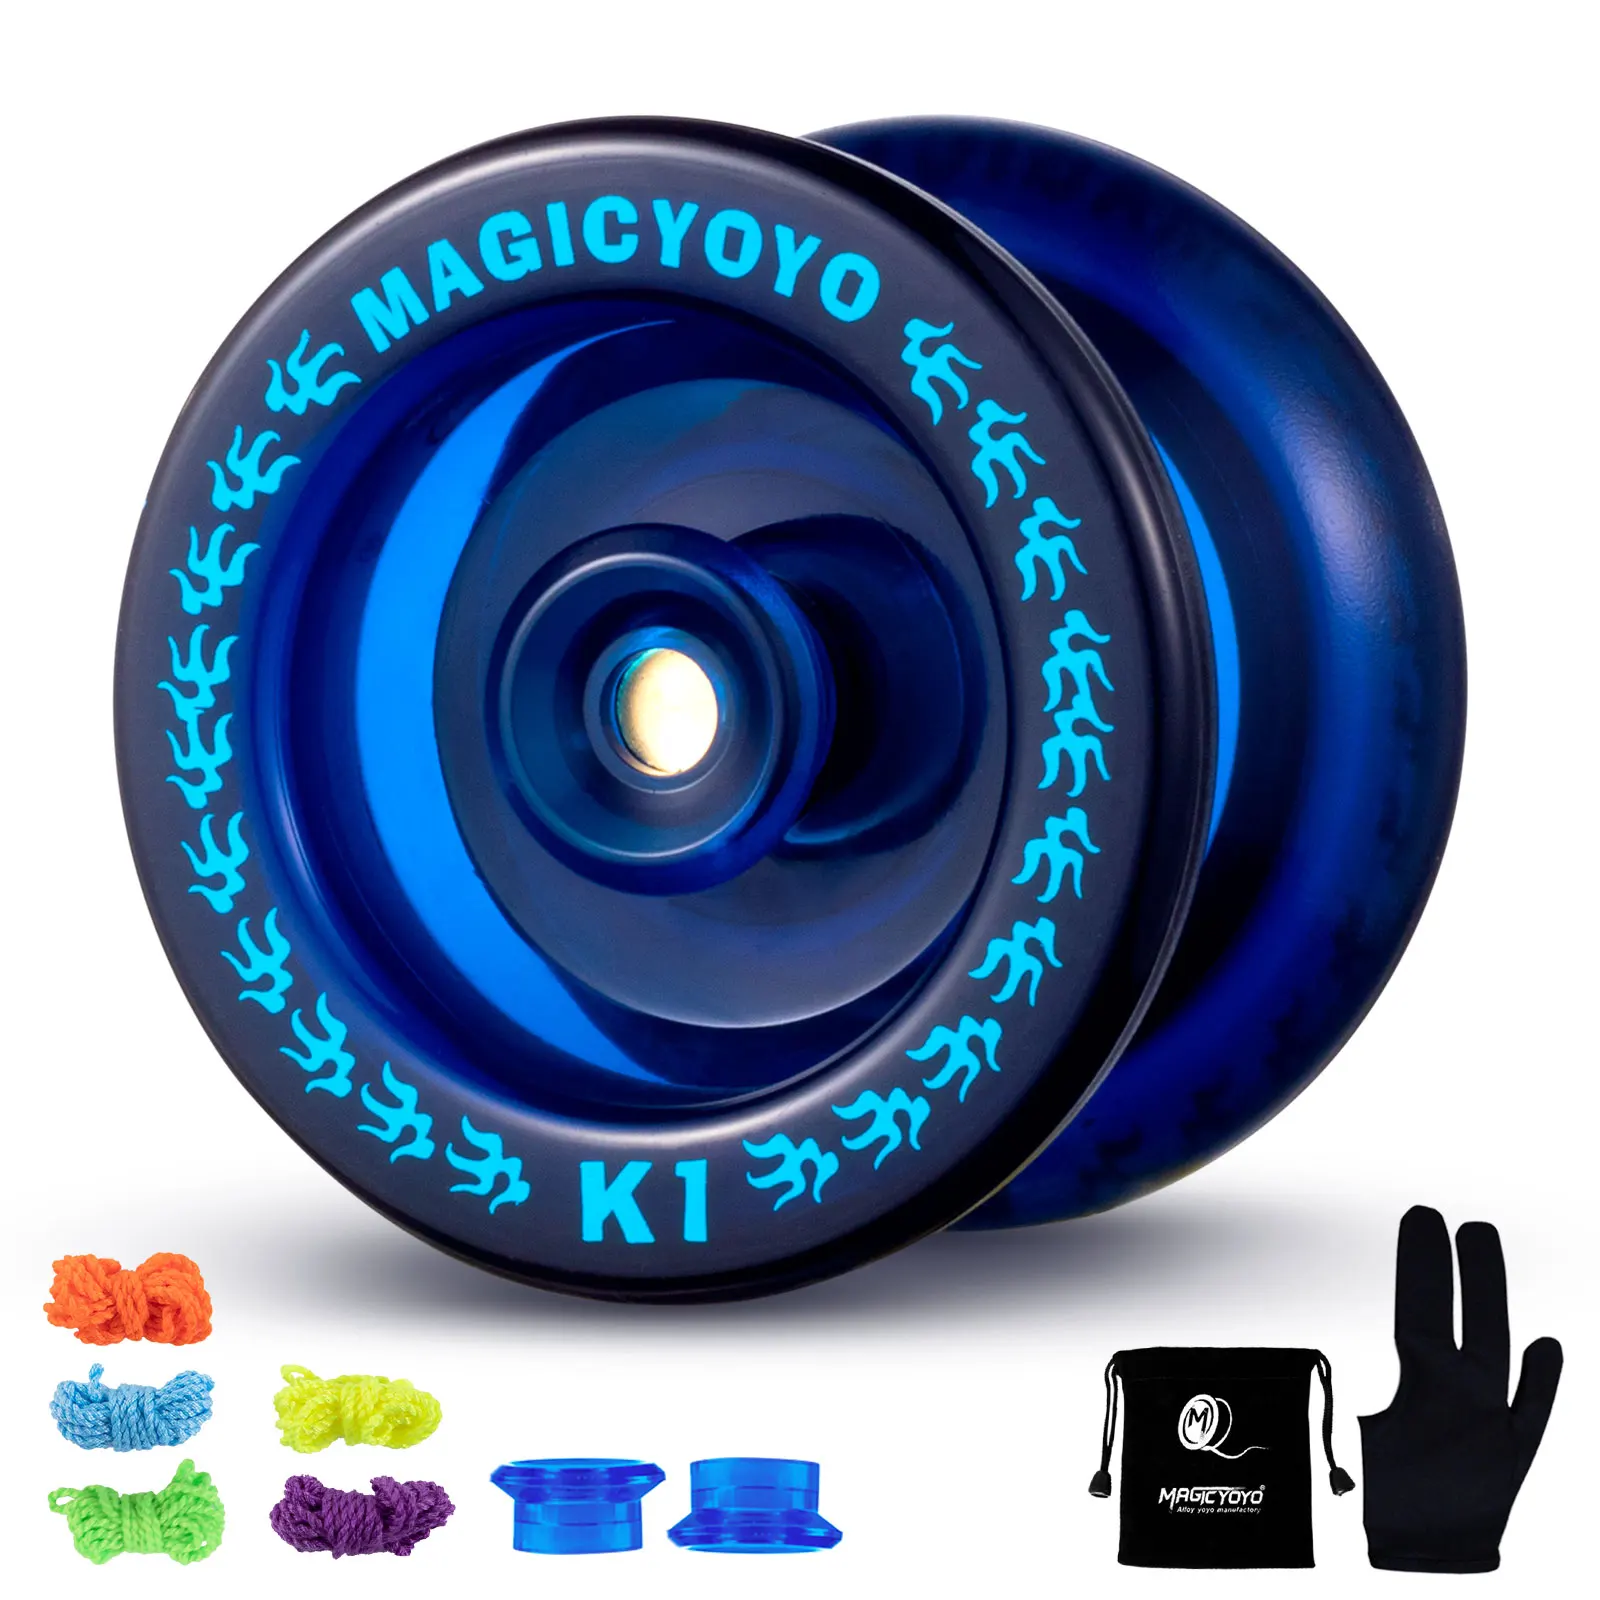 MAGICYOYO K1-Plus Professional Responsive Yoyo for Kids Beginner, Durable Plastic Yo yo with 5 Yoyo Strings + Yo-Yo Glove + Bag